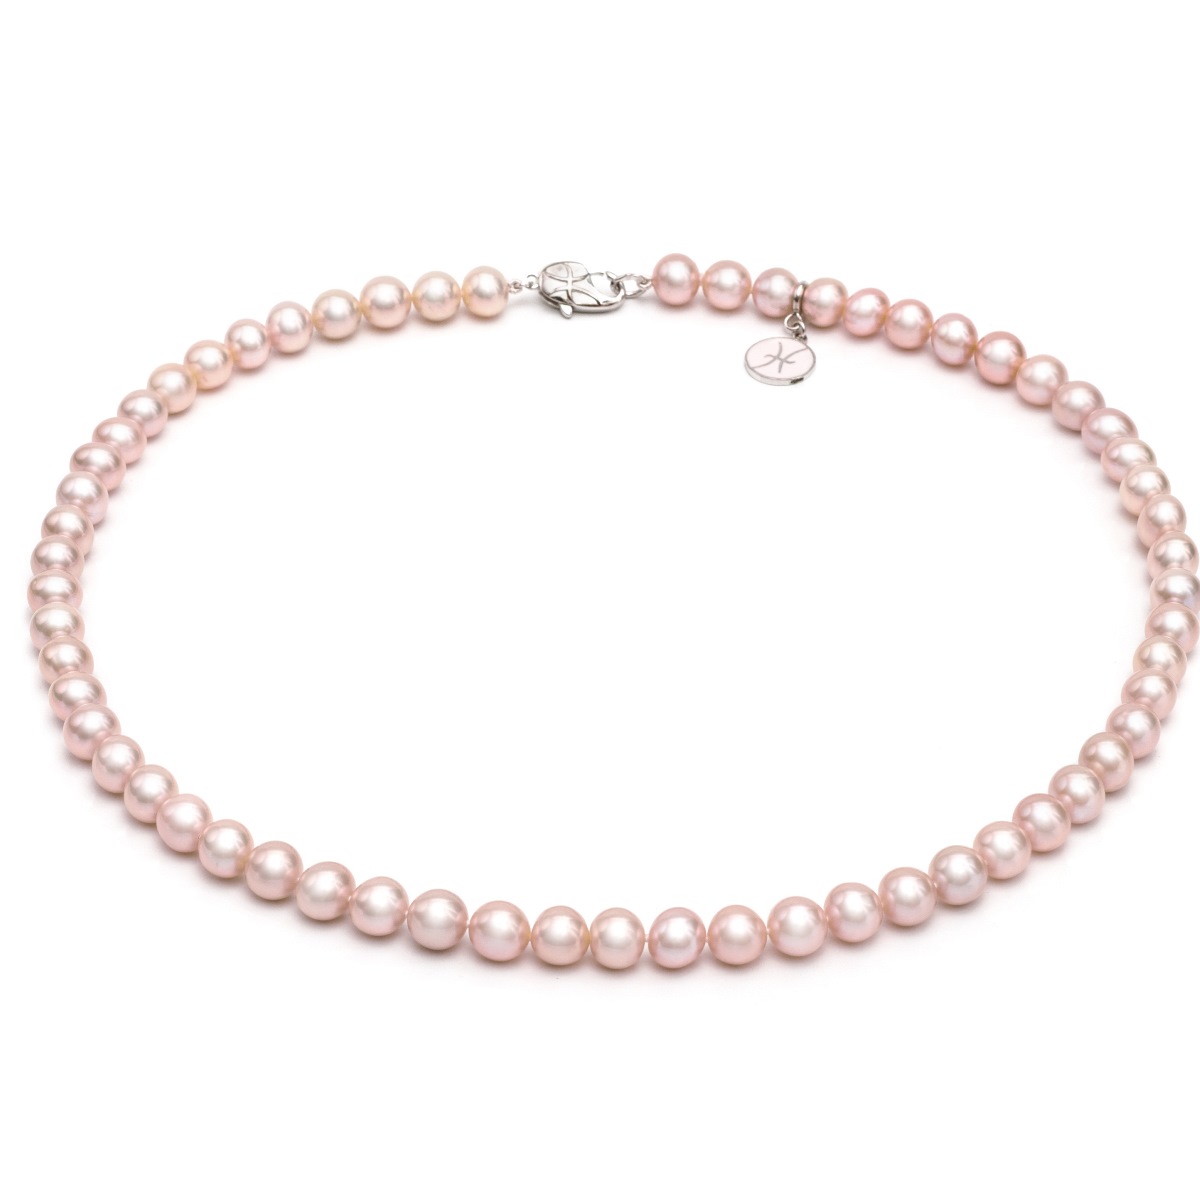 Ожерелье и браслет из жемчуга розового цвета купить в фирменном магазинеНасонЖемчуг